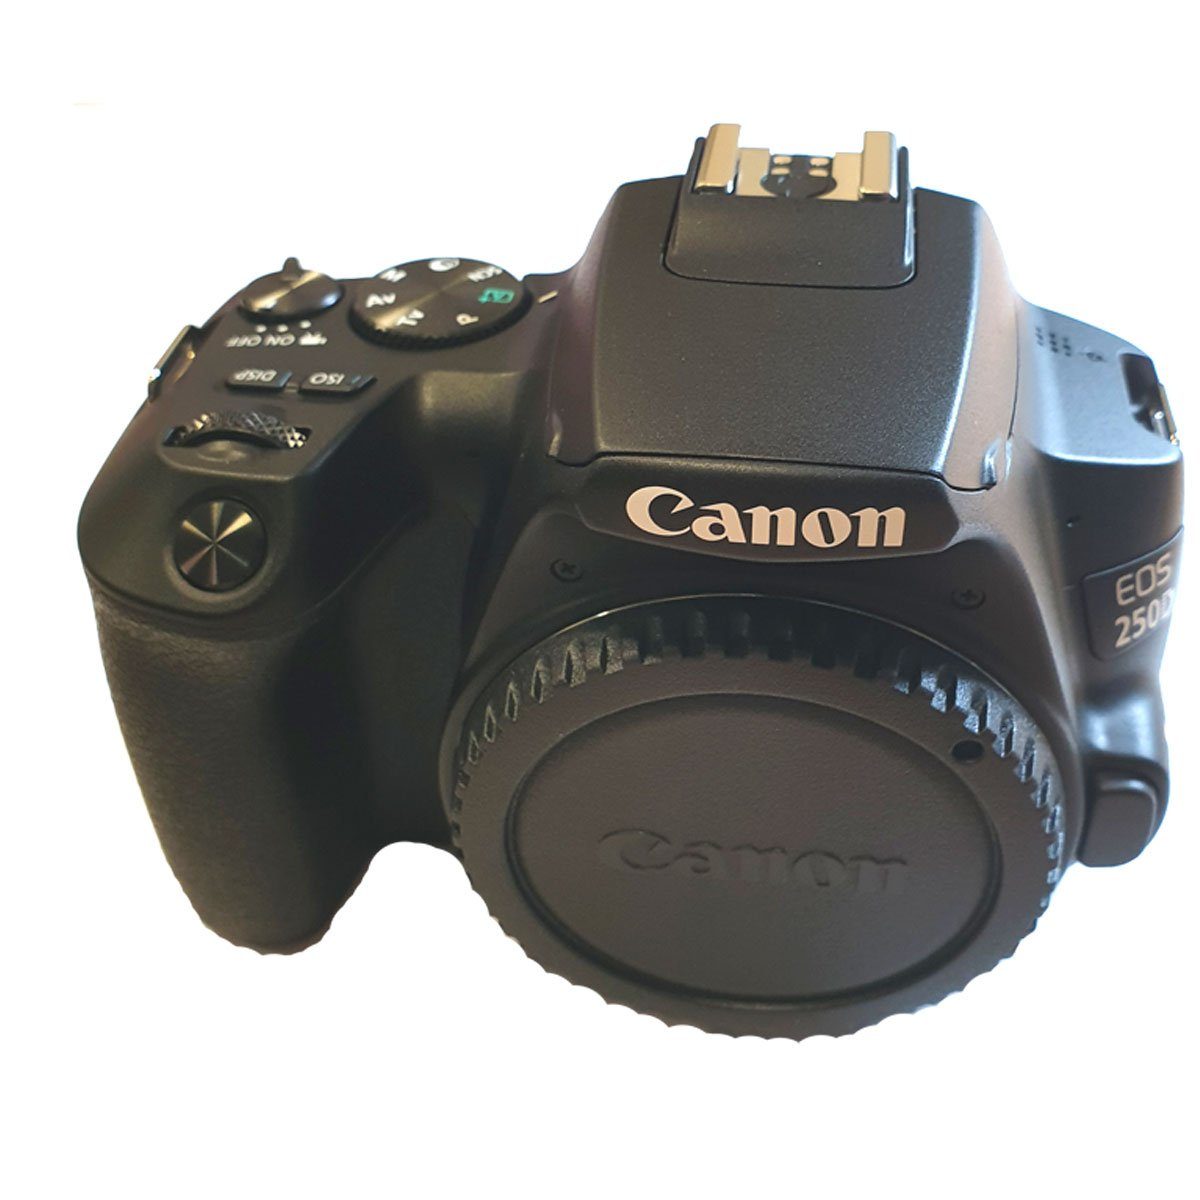 Canon EOS 250D Spiegelreflexkamera schwarz Body